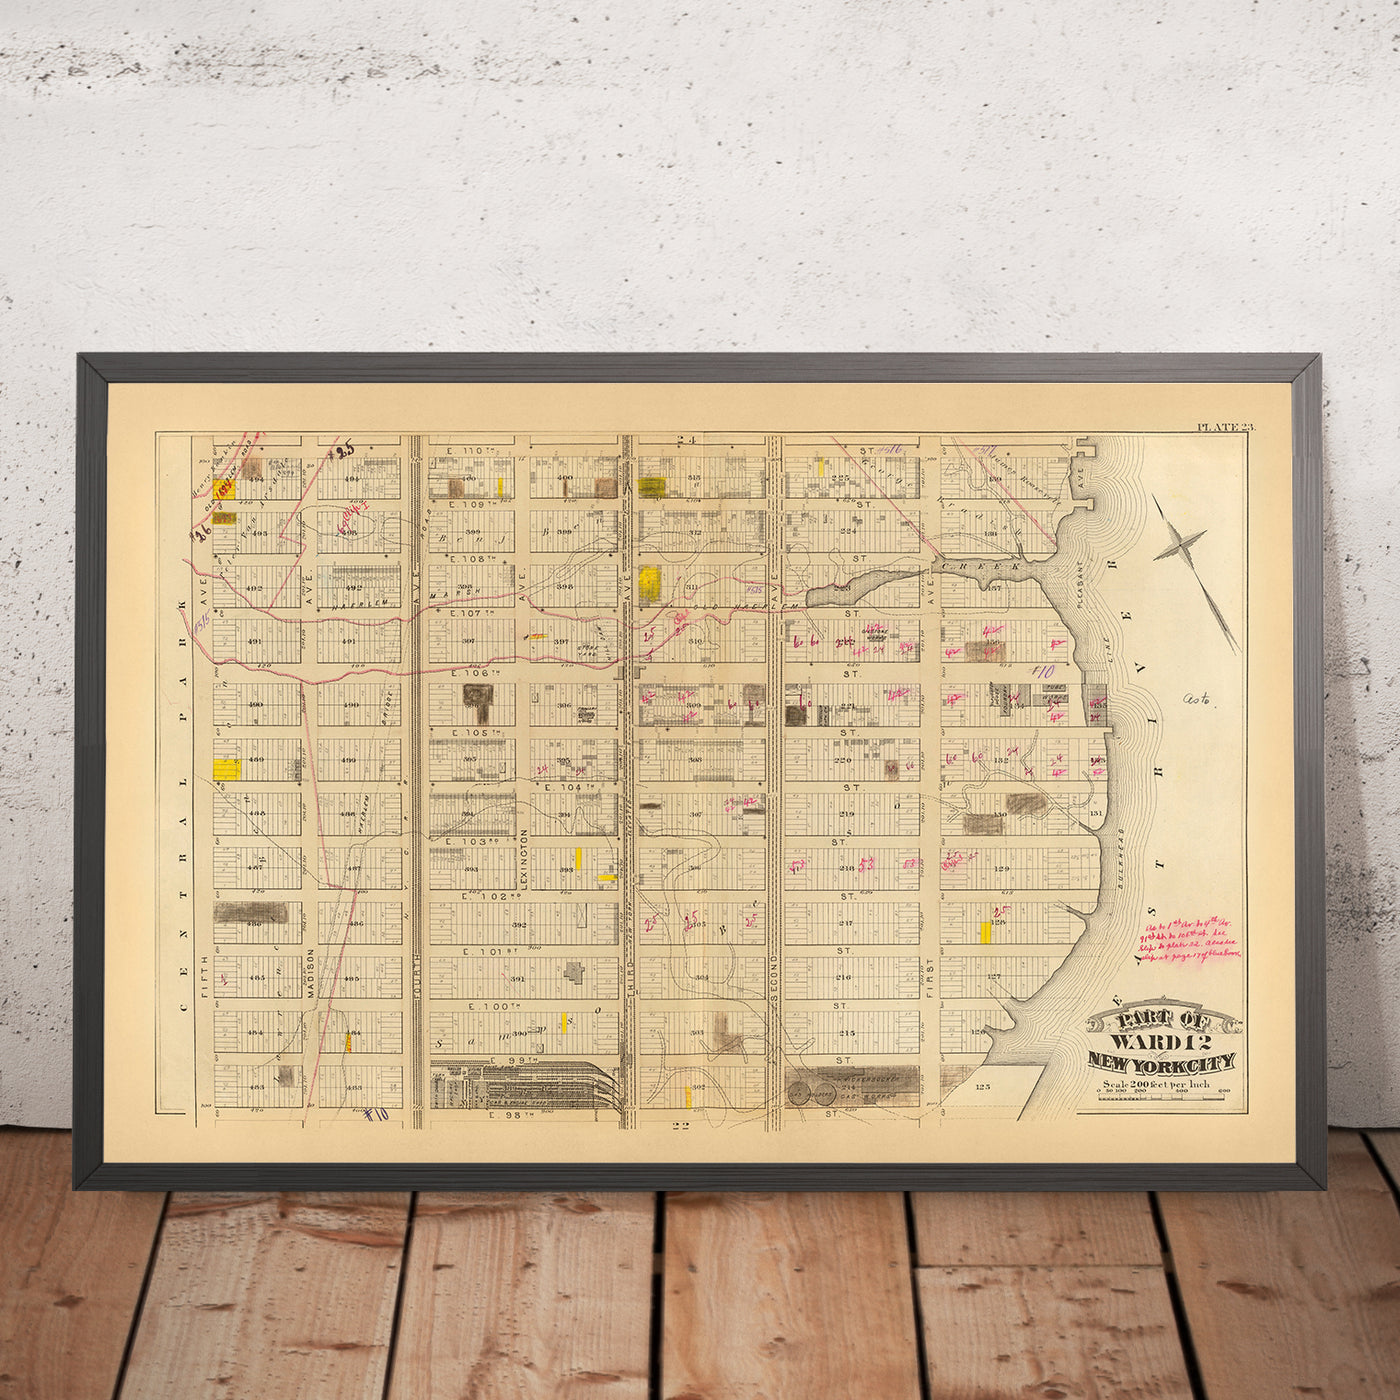 Mapa antiguo del Upper East Side, Nueva York, 1879: East 98th a East 110th St, Knickerbocker Gas Works y Original Farm Lines